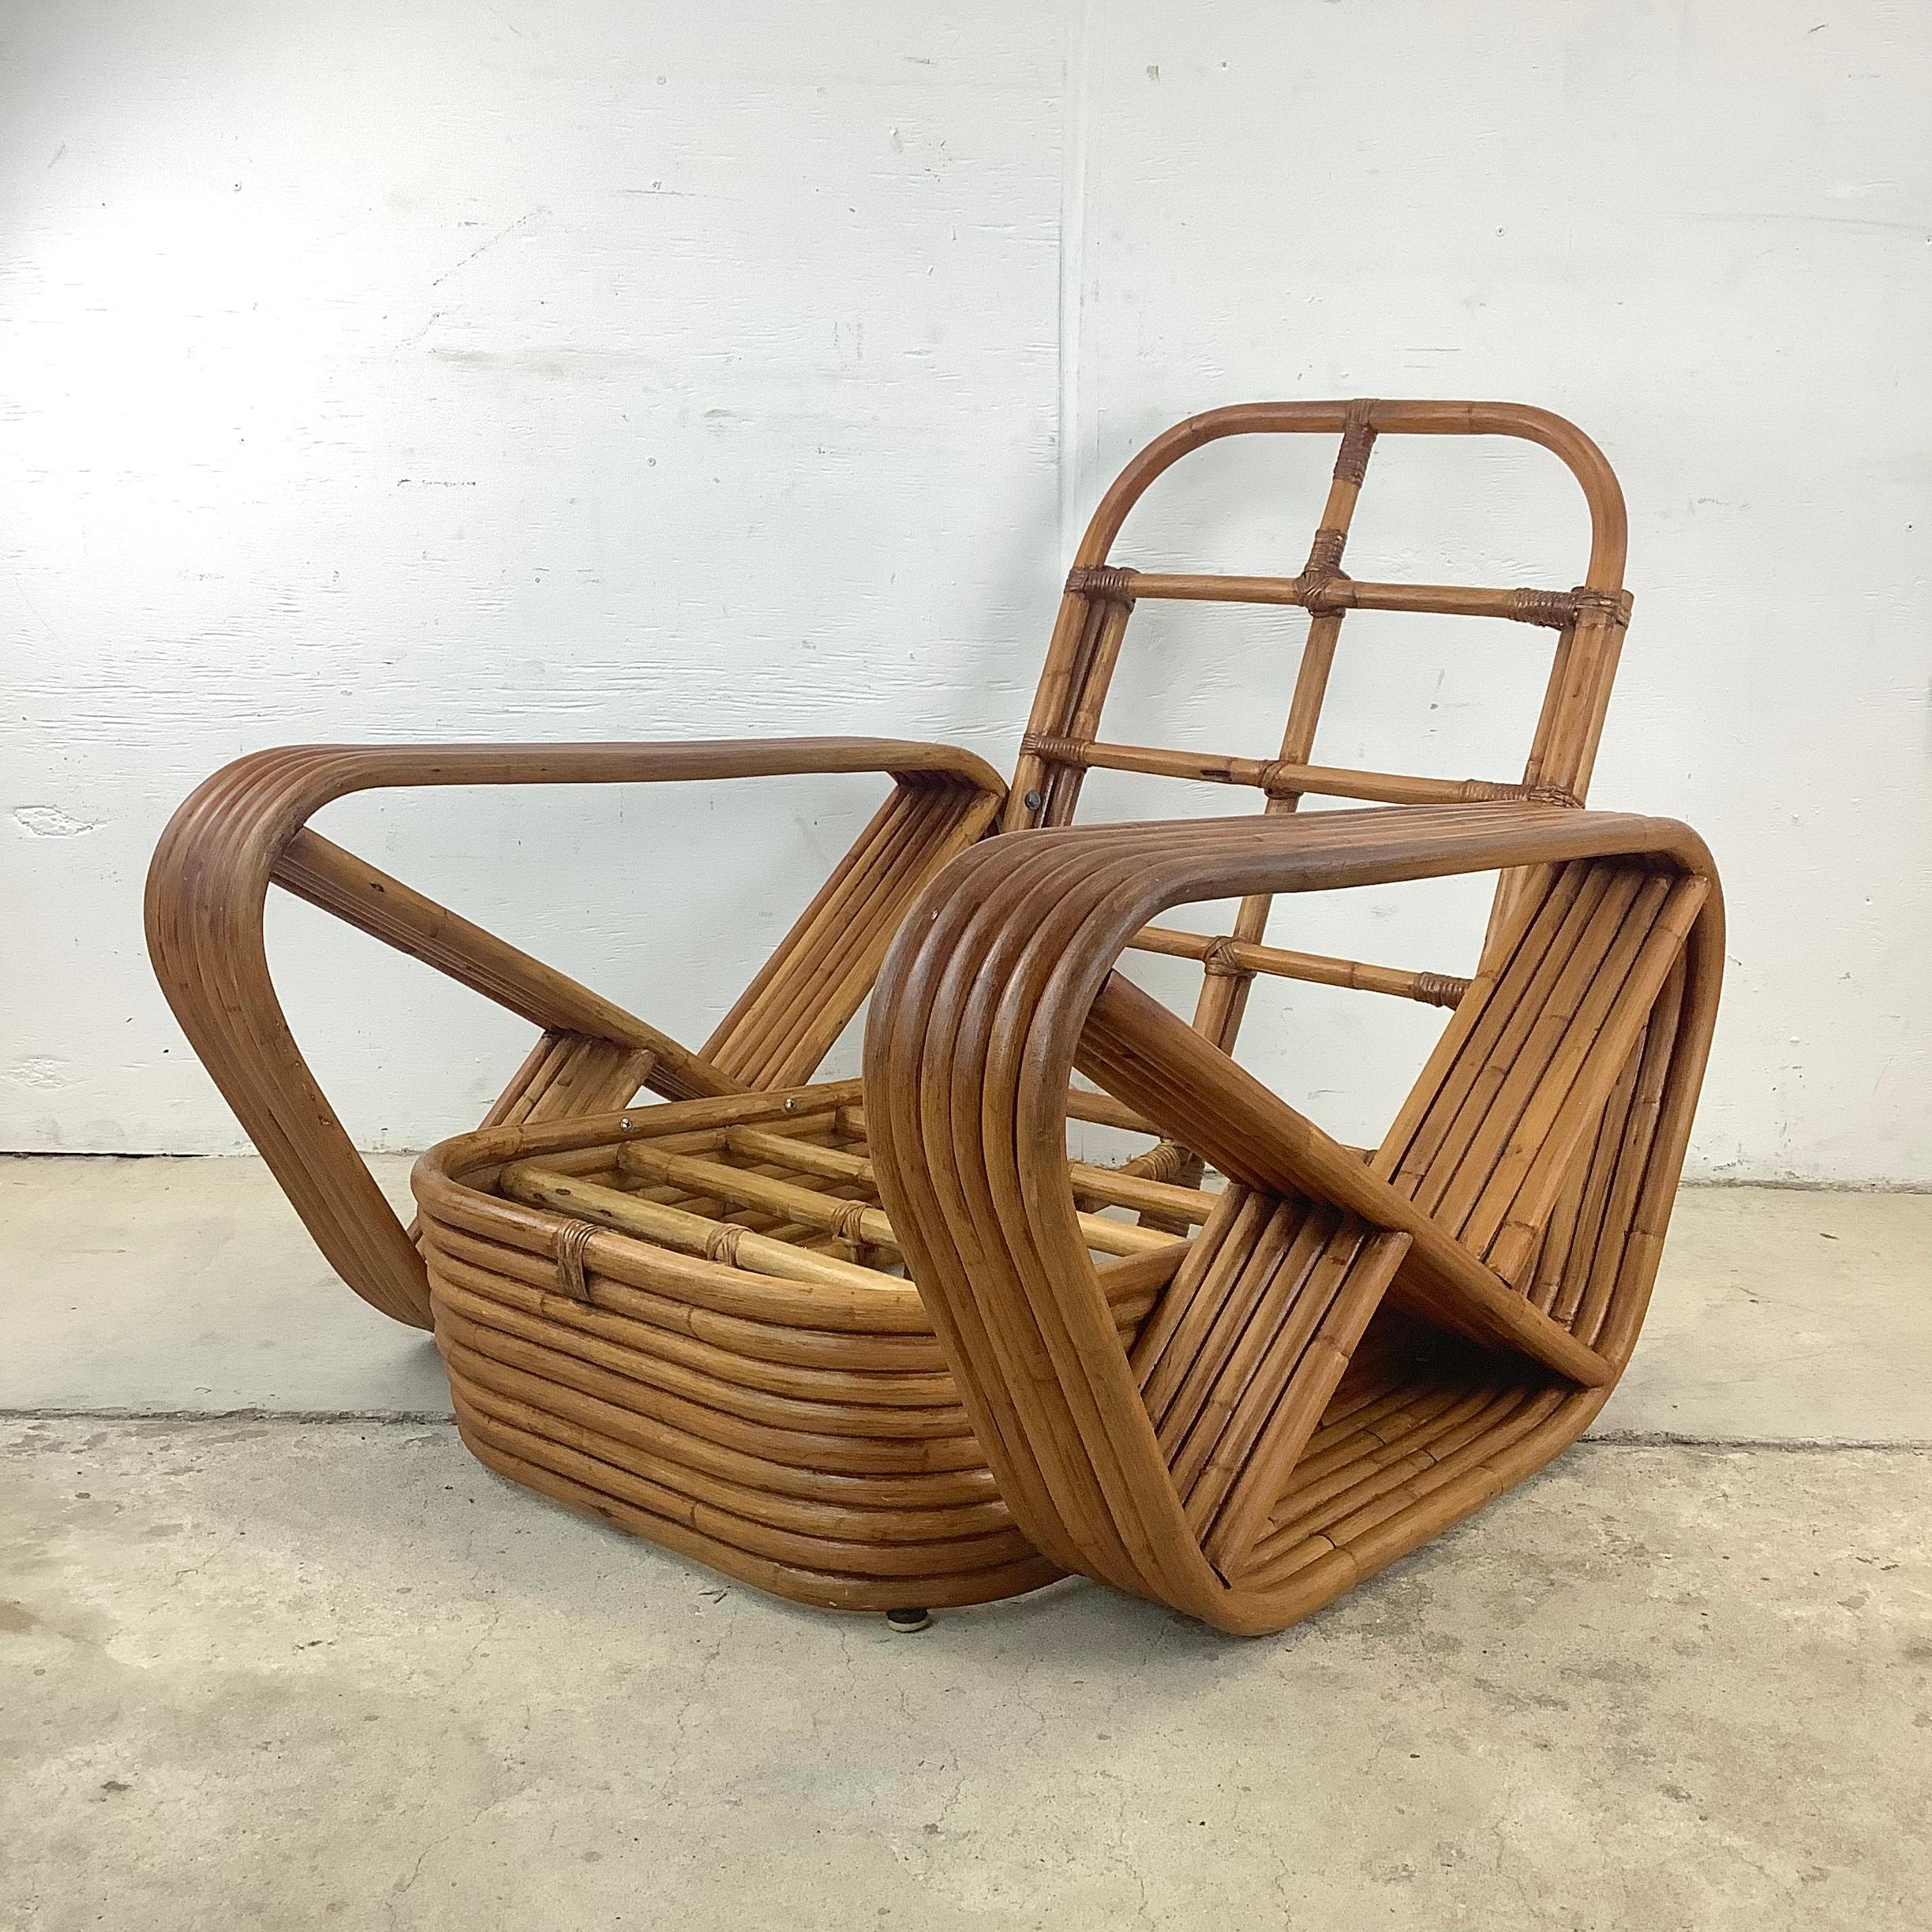 Entrez dans un monde de charme bohème avec ce fauteuil Paul Frankl Style Bamboo Pretzel frame, un exemple de qualité de l'artisanat vintage avec une touche de Tropical flair. Fabriqué avec le plus grand soin et une attention particulière aux